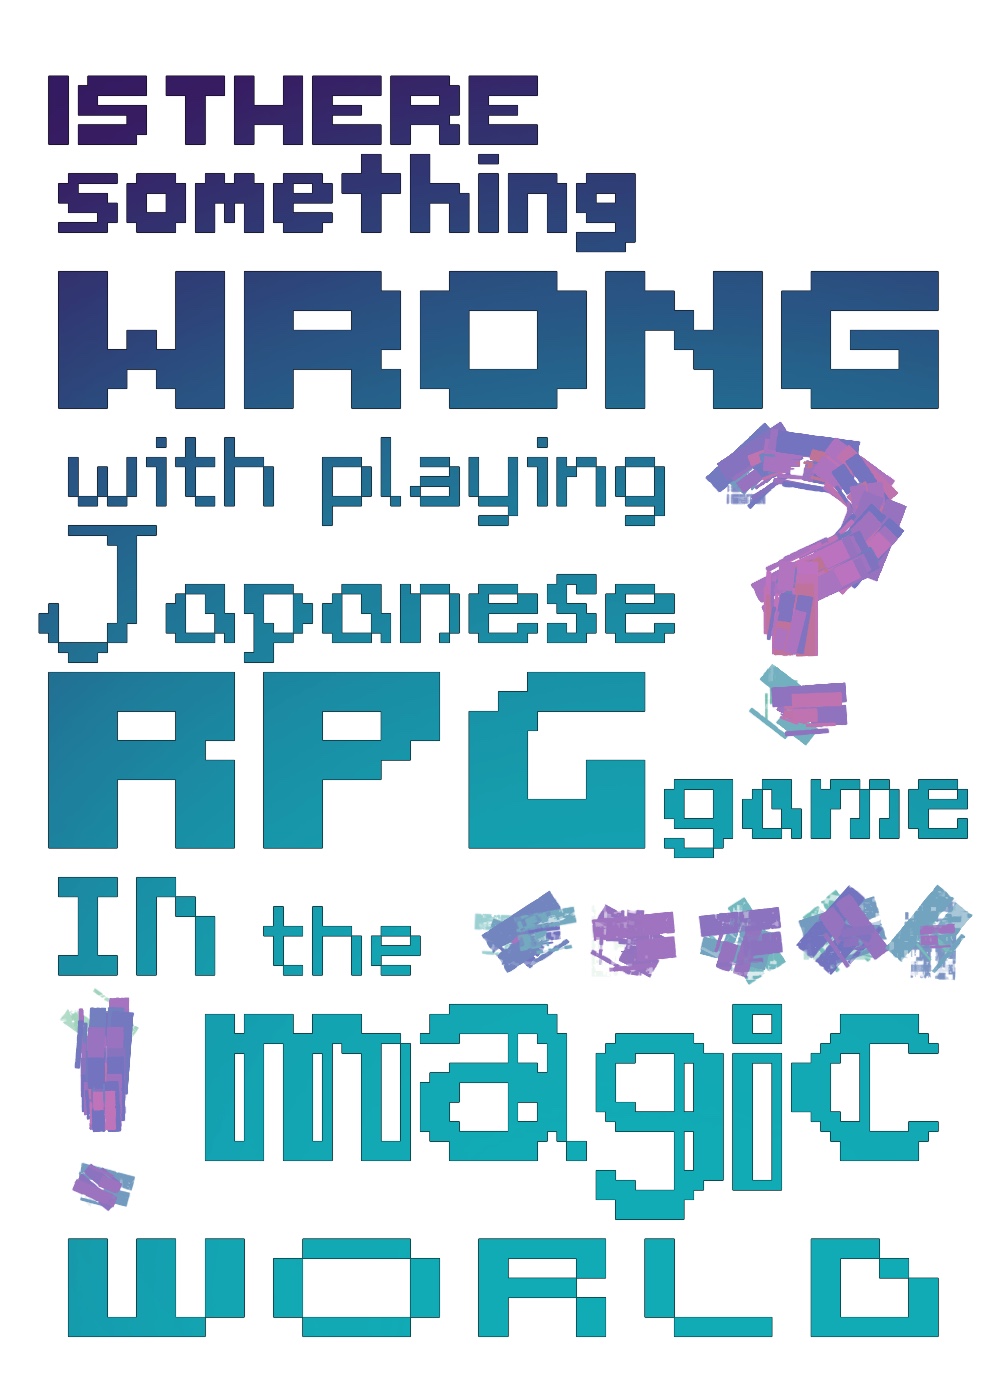 [HP]在魔法界玩日式rpg是否搞错了什么